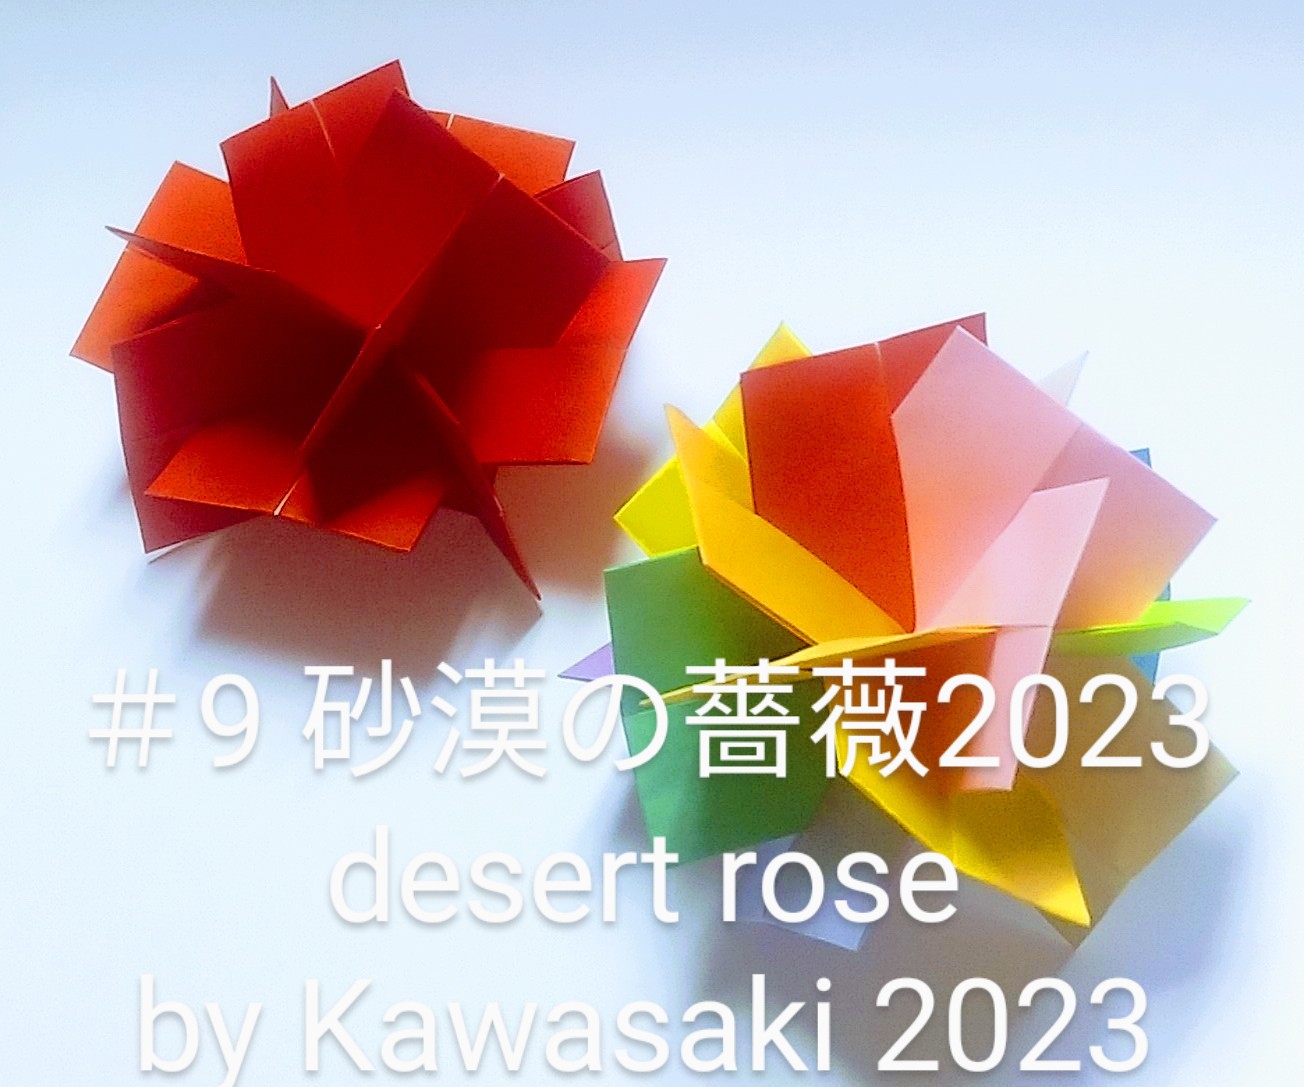 2023/02/11(Sat) 18:05「＃9砂漠の薔薇2023二種 desert rose by Kawasaki2023(作5023,2/11四角赤2:30,五角14:44)」川崎敏和 T.Kawasaki 
（創作者 Author：川崎敏和 T.Kawasaki ,　製作者 Folder：川崎敏和 T.Kawasaki ,　出典 Source：川崎敏和折り紙キット2023＃９）
 名作XYZに代表されるユニット折り紙群では【多面体】にならないものは排除されています。本作品のパーツも多面体をなしませんが、折り紙として自然でシンプルなので排除すべきではありません。川崎は【多面体＜折り紙】ということです。【折り紙＜多面体】であれば、空間ベクトルの内積計算をしなければなりません。 